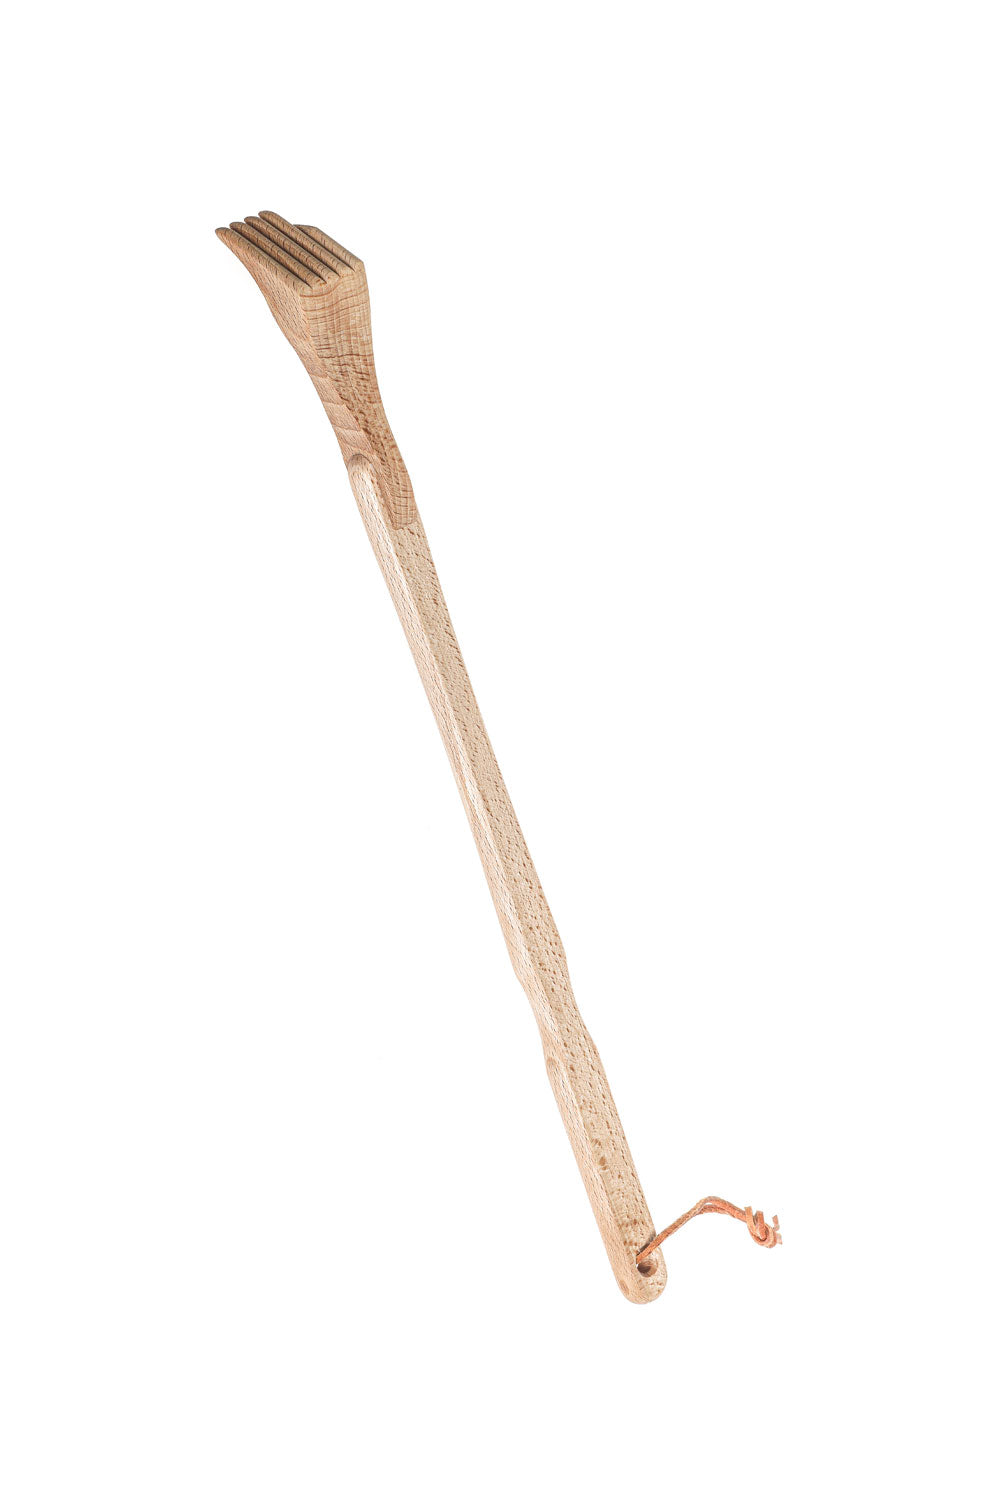 Mit diesem Rueckenkratzer steht dem bequemen Kratzen nichts mehr im Wege. Denn der Rueckenkratzer hat eine Holzhand und ist aus robustem Bambus. Ein praktisches und witziges Geschenk zu jedem Anlass. 